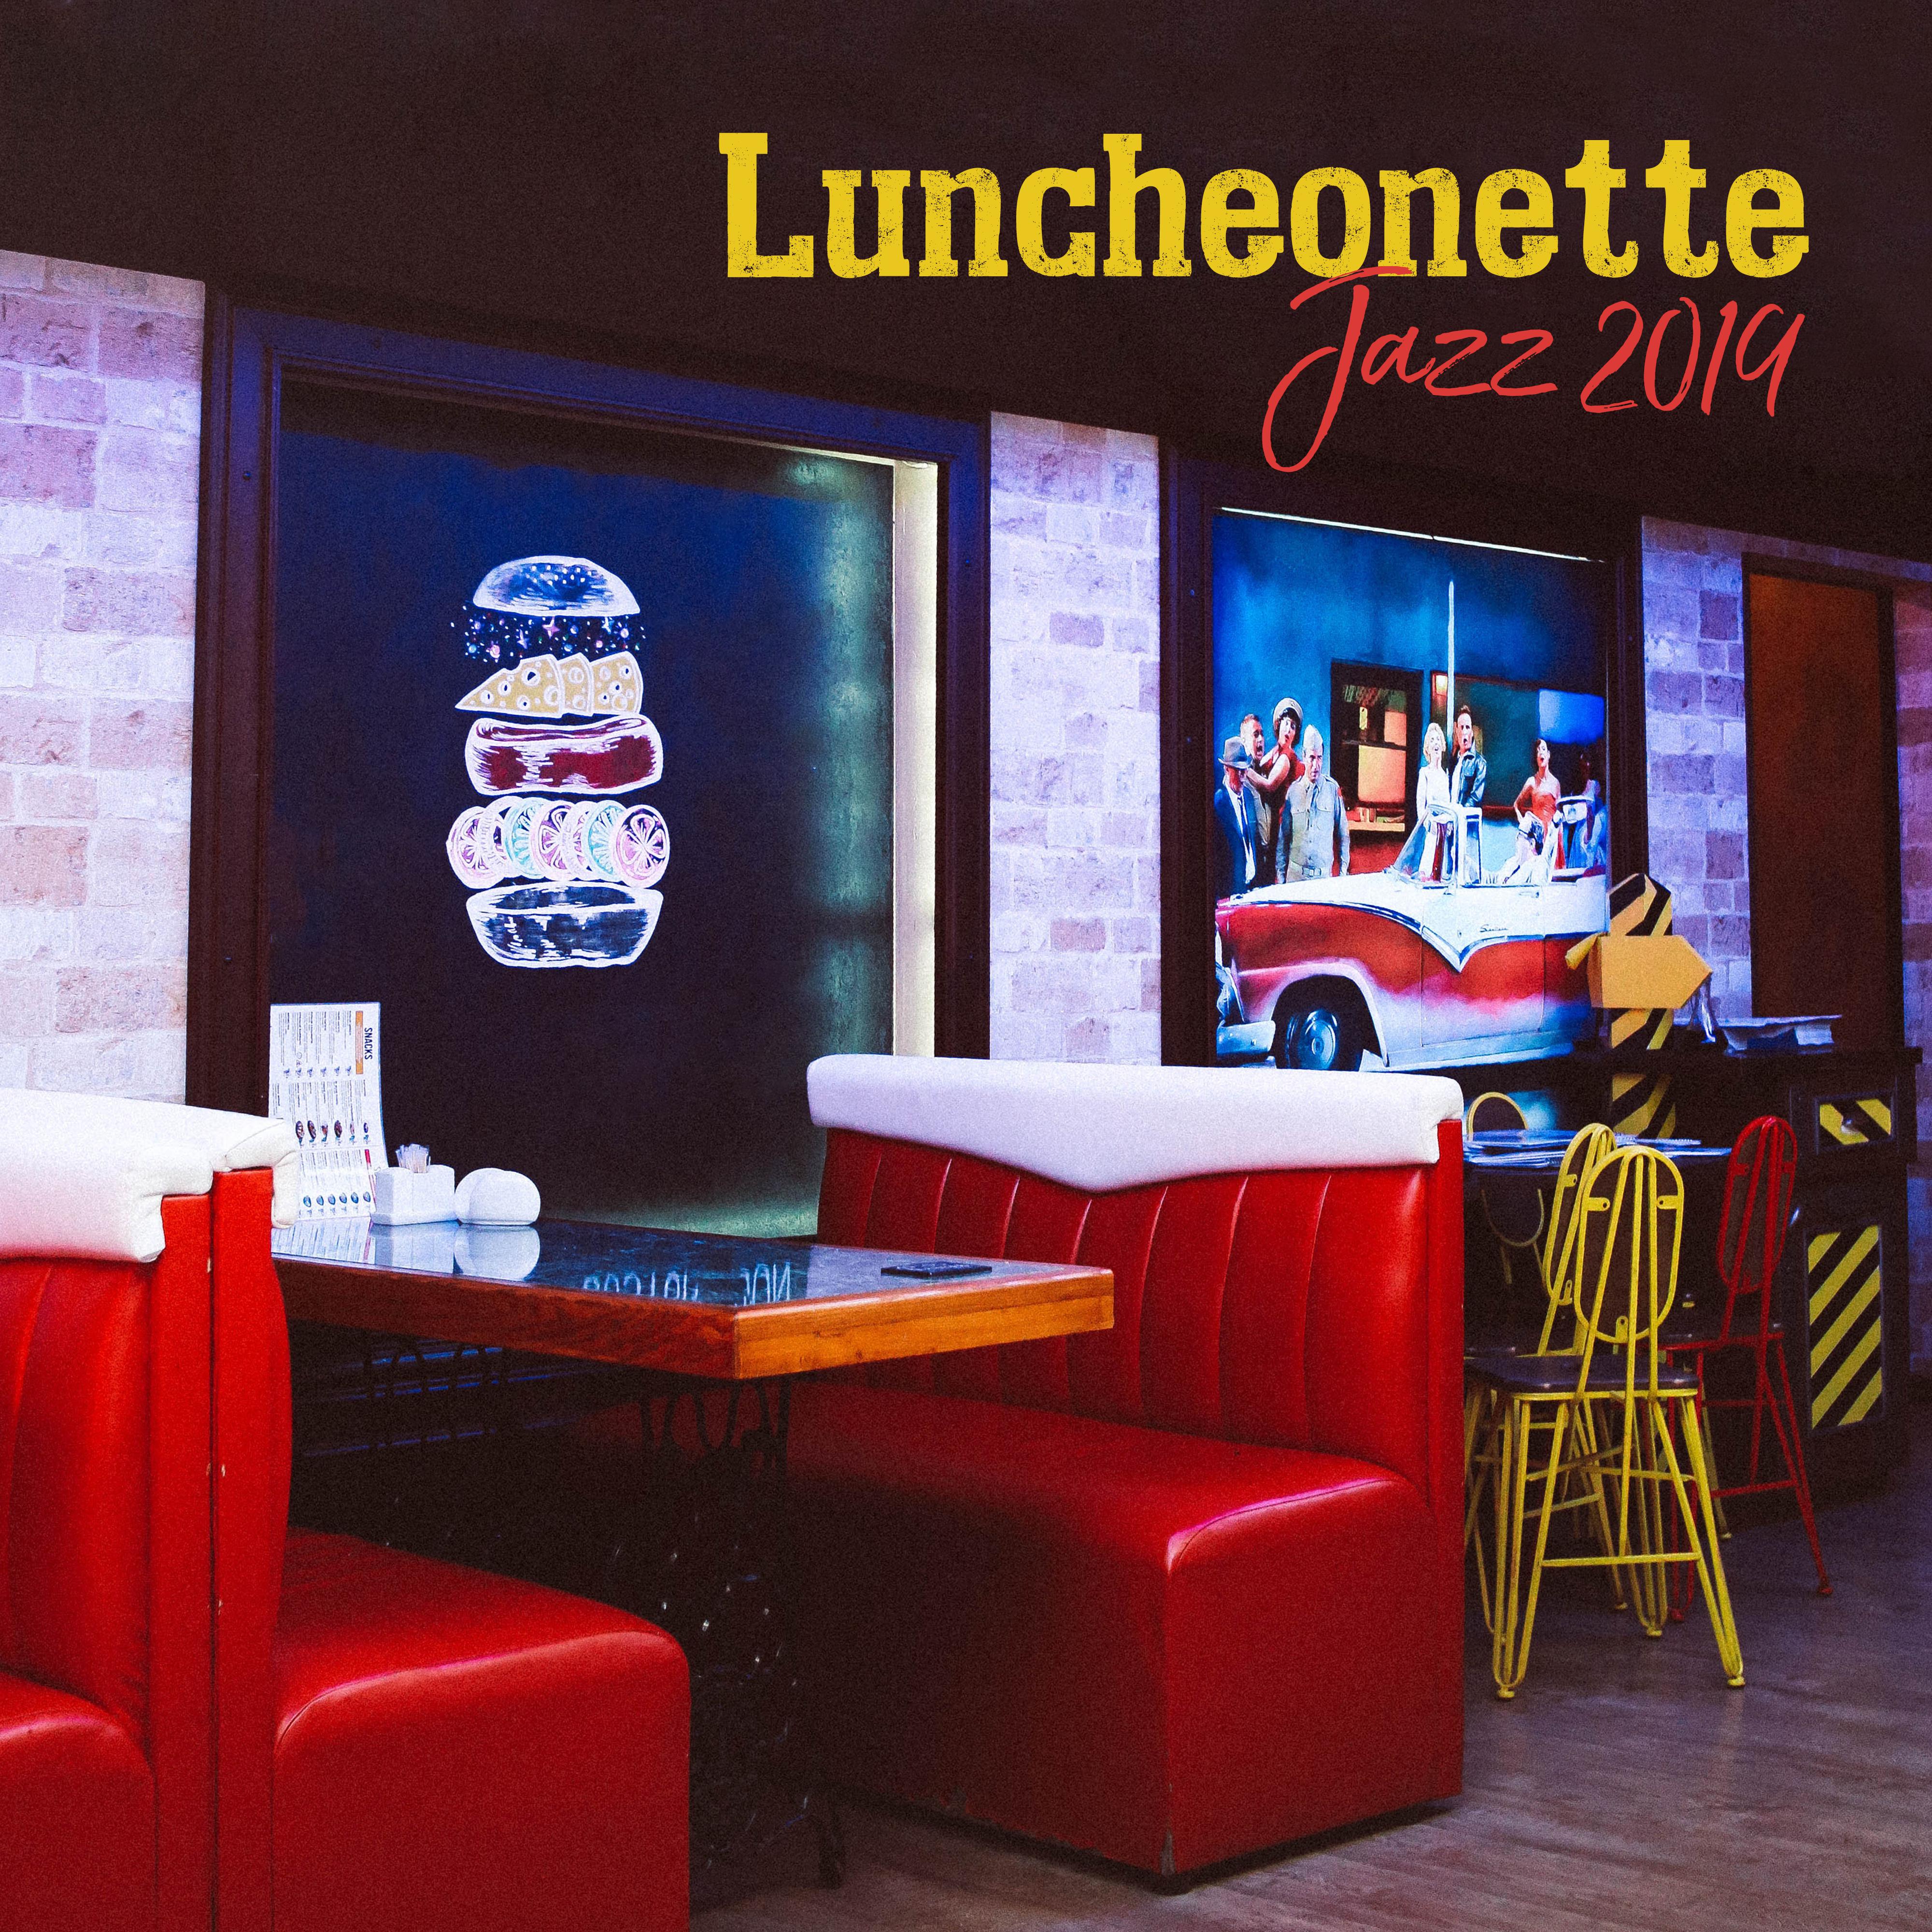 Luncheonette Jazz 2019